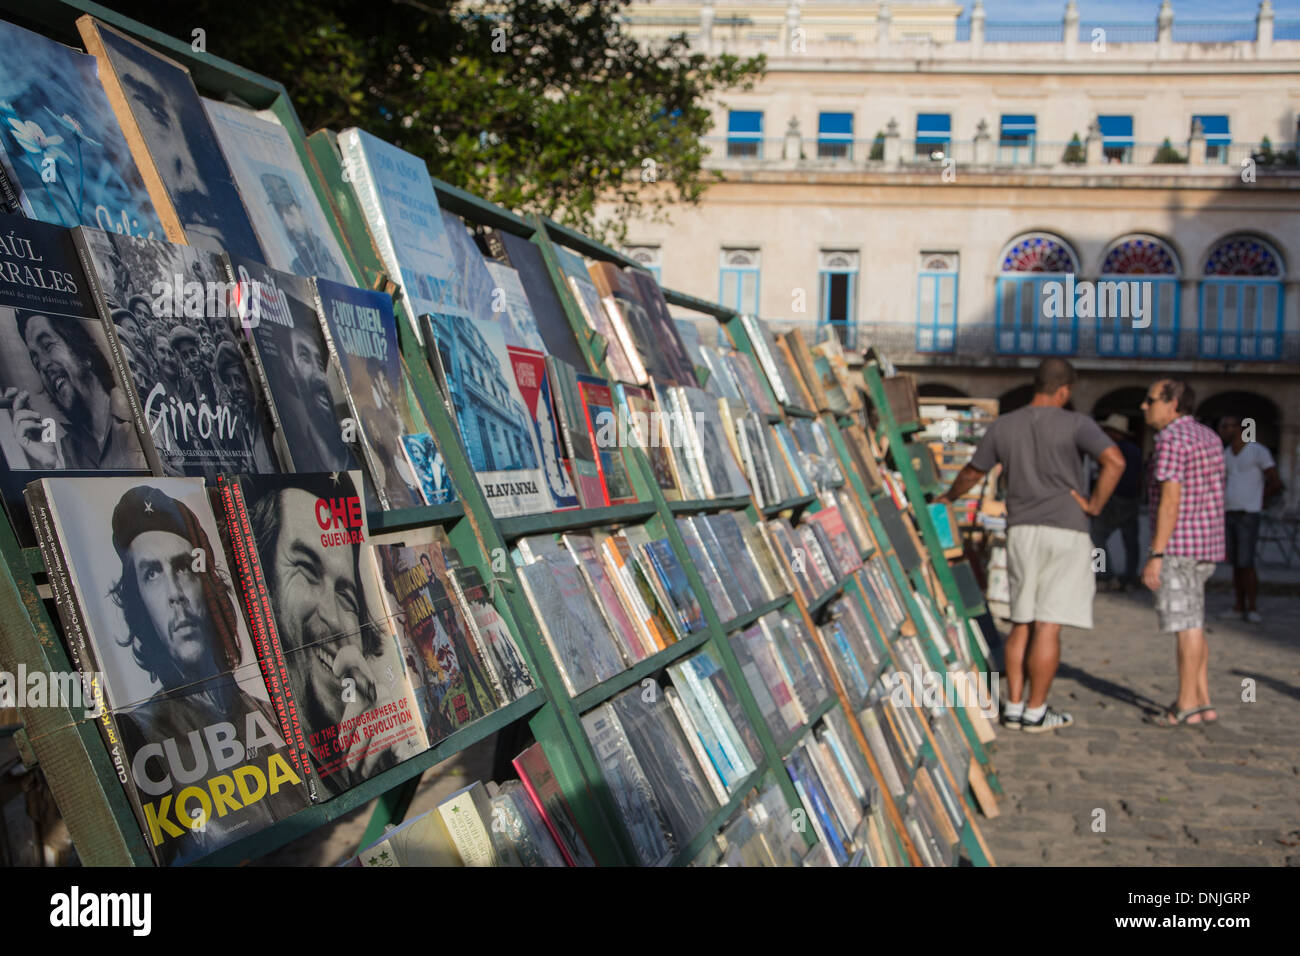 BOOK MARKET IN THE CITY CENTER, PLAZA DE ARMAS, HAVANA, CUBA, THE CARIBBEAN Stock Photo